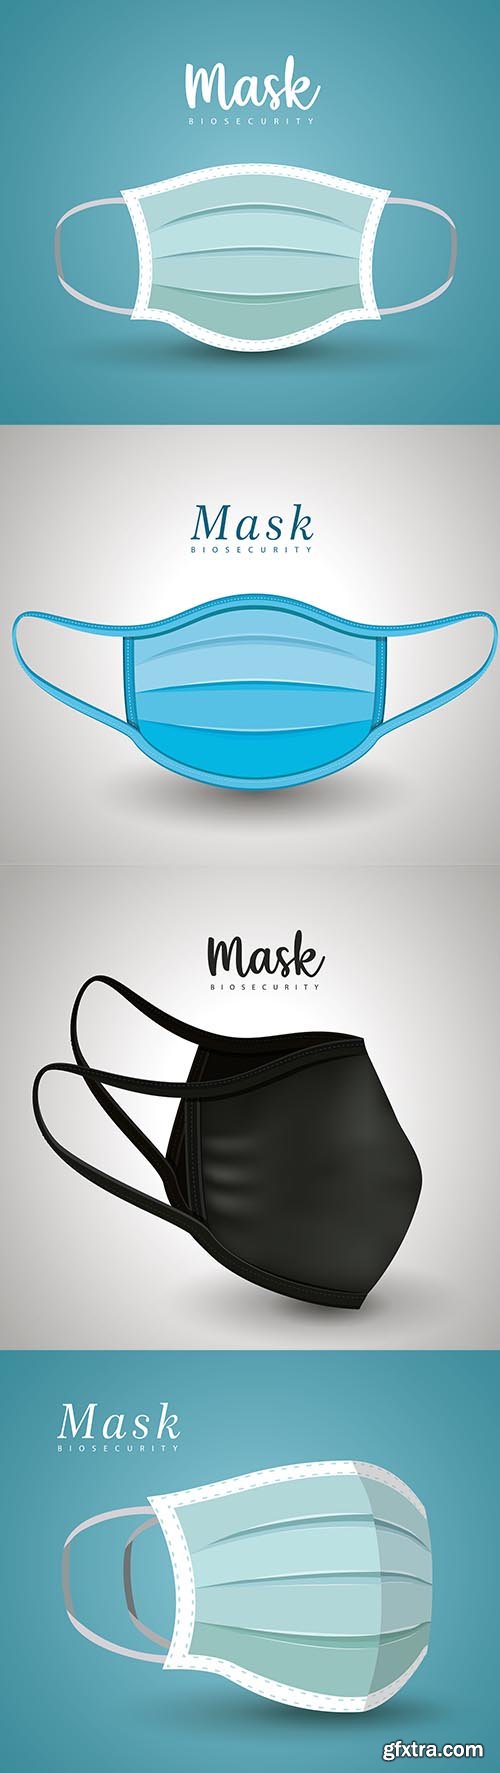 Medical Blue Mask Vector Design